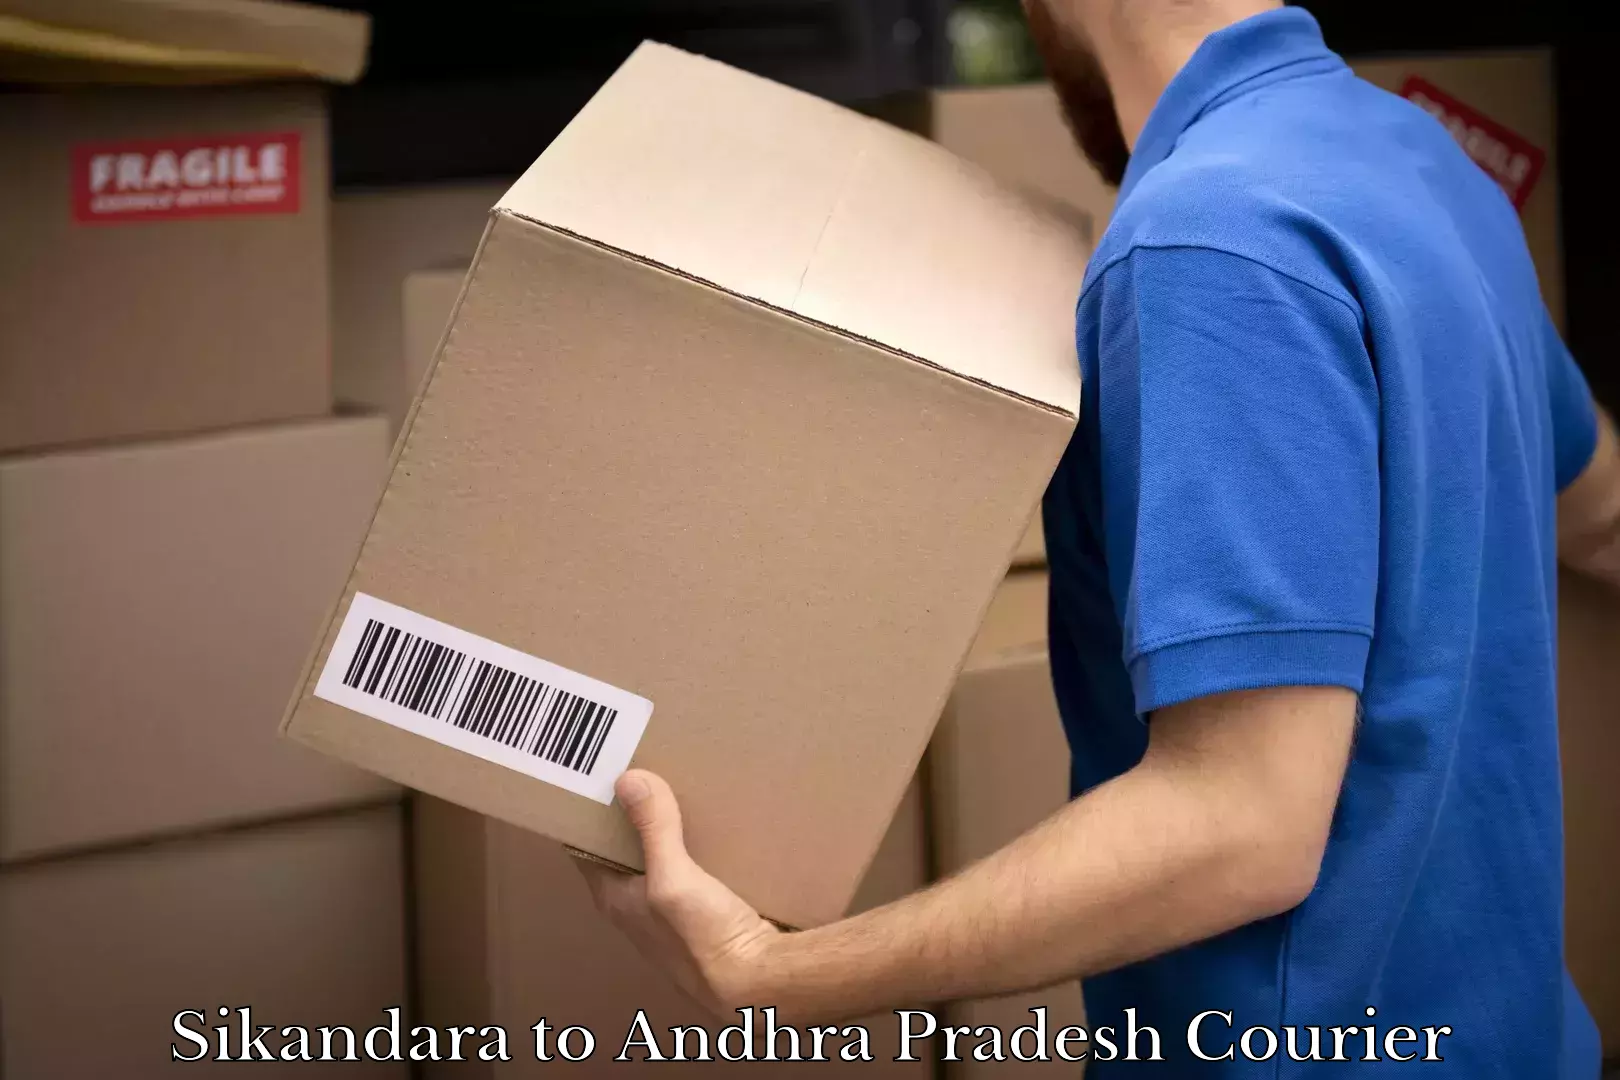 Shipping and handling Sikandara to Andhra Pradesh